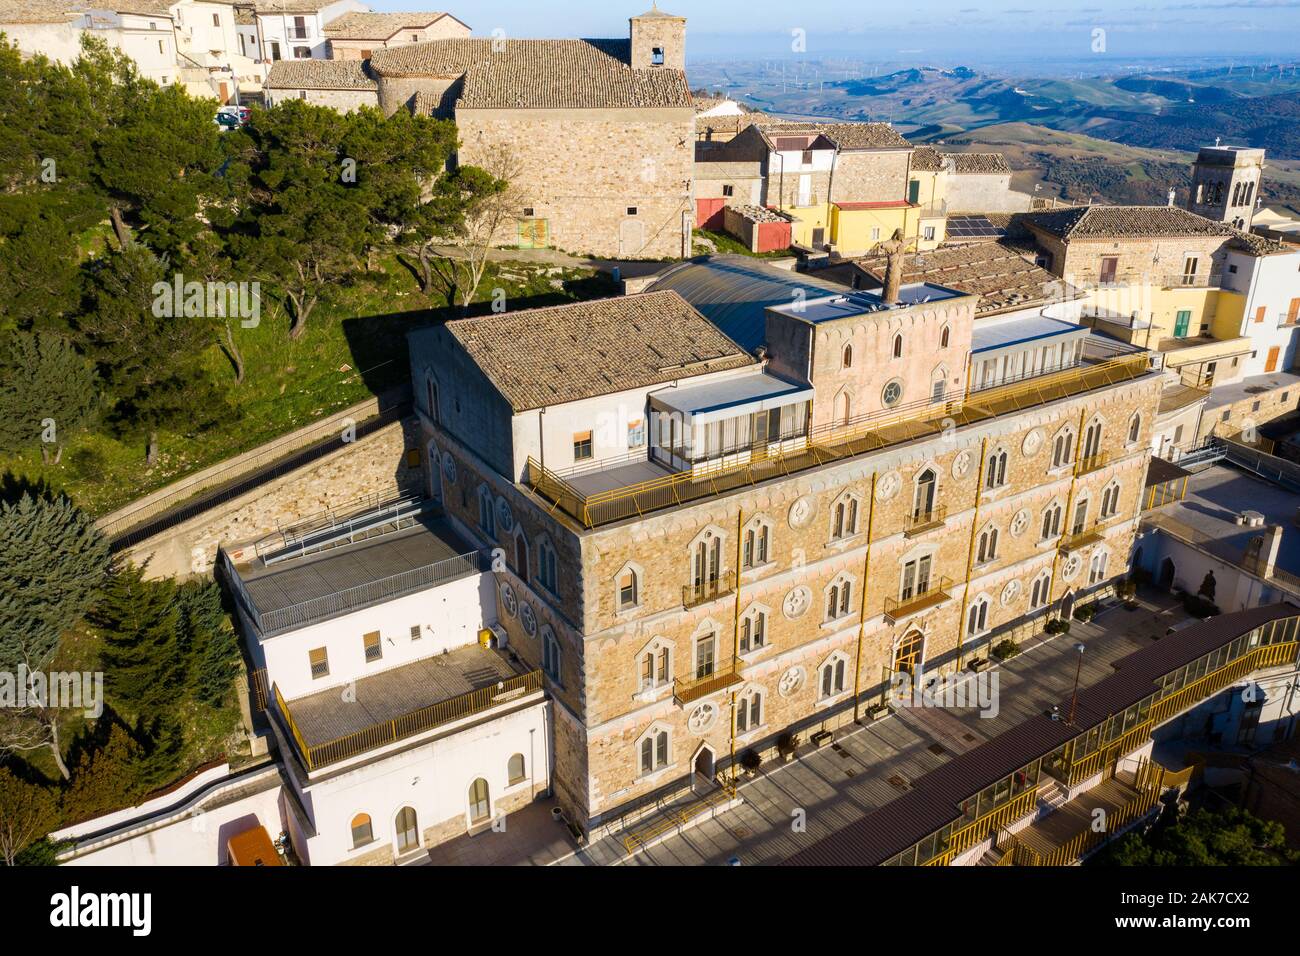 Fondazione Sacro Cuore di Gesù, Retirement Home, Sant'Agata di Puglia, Foggia, Italy Stock Photo